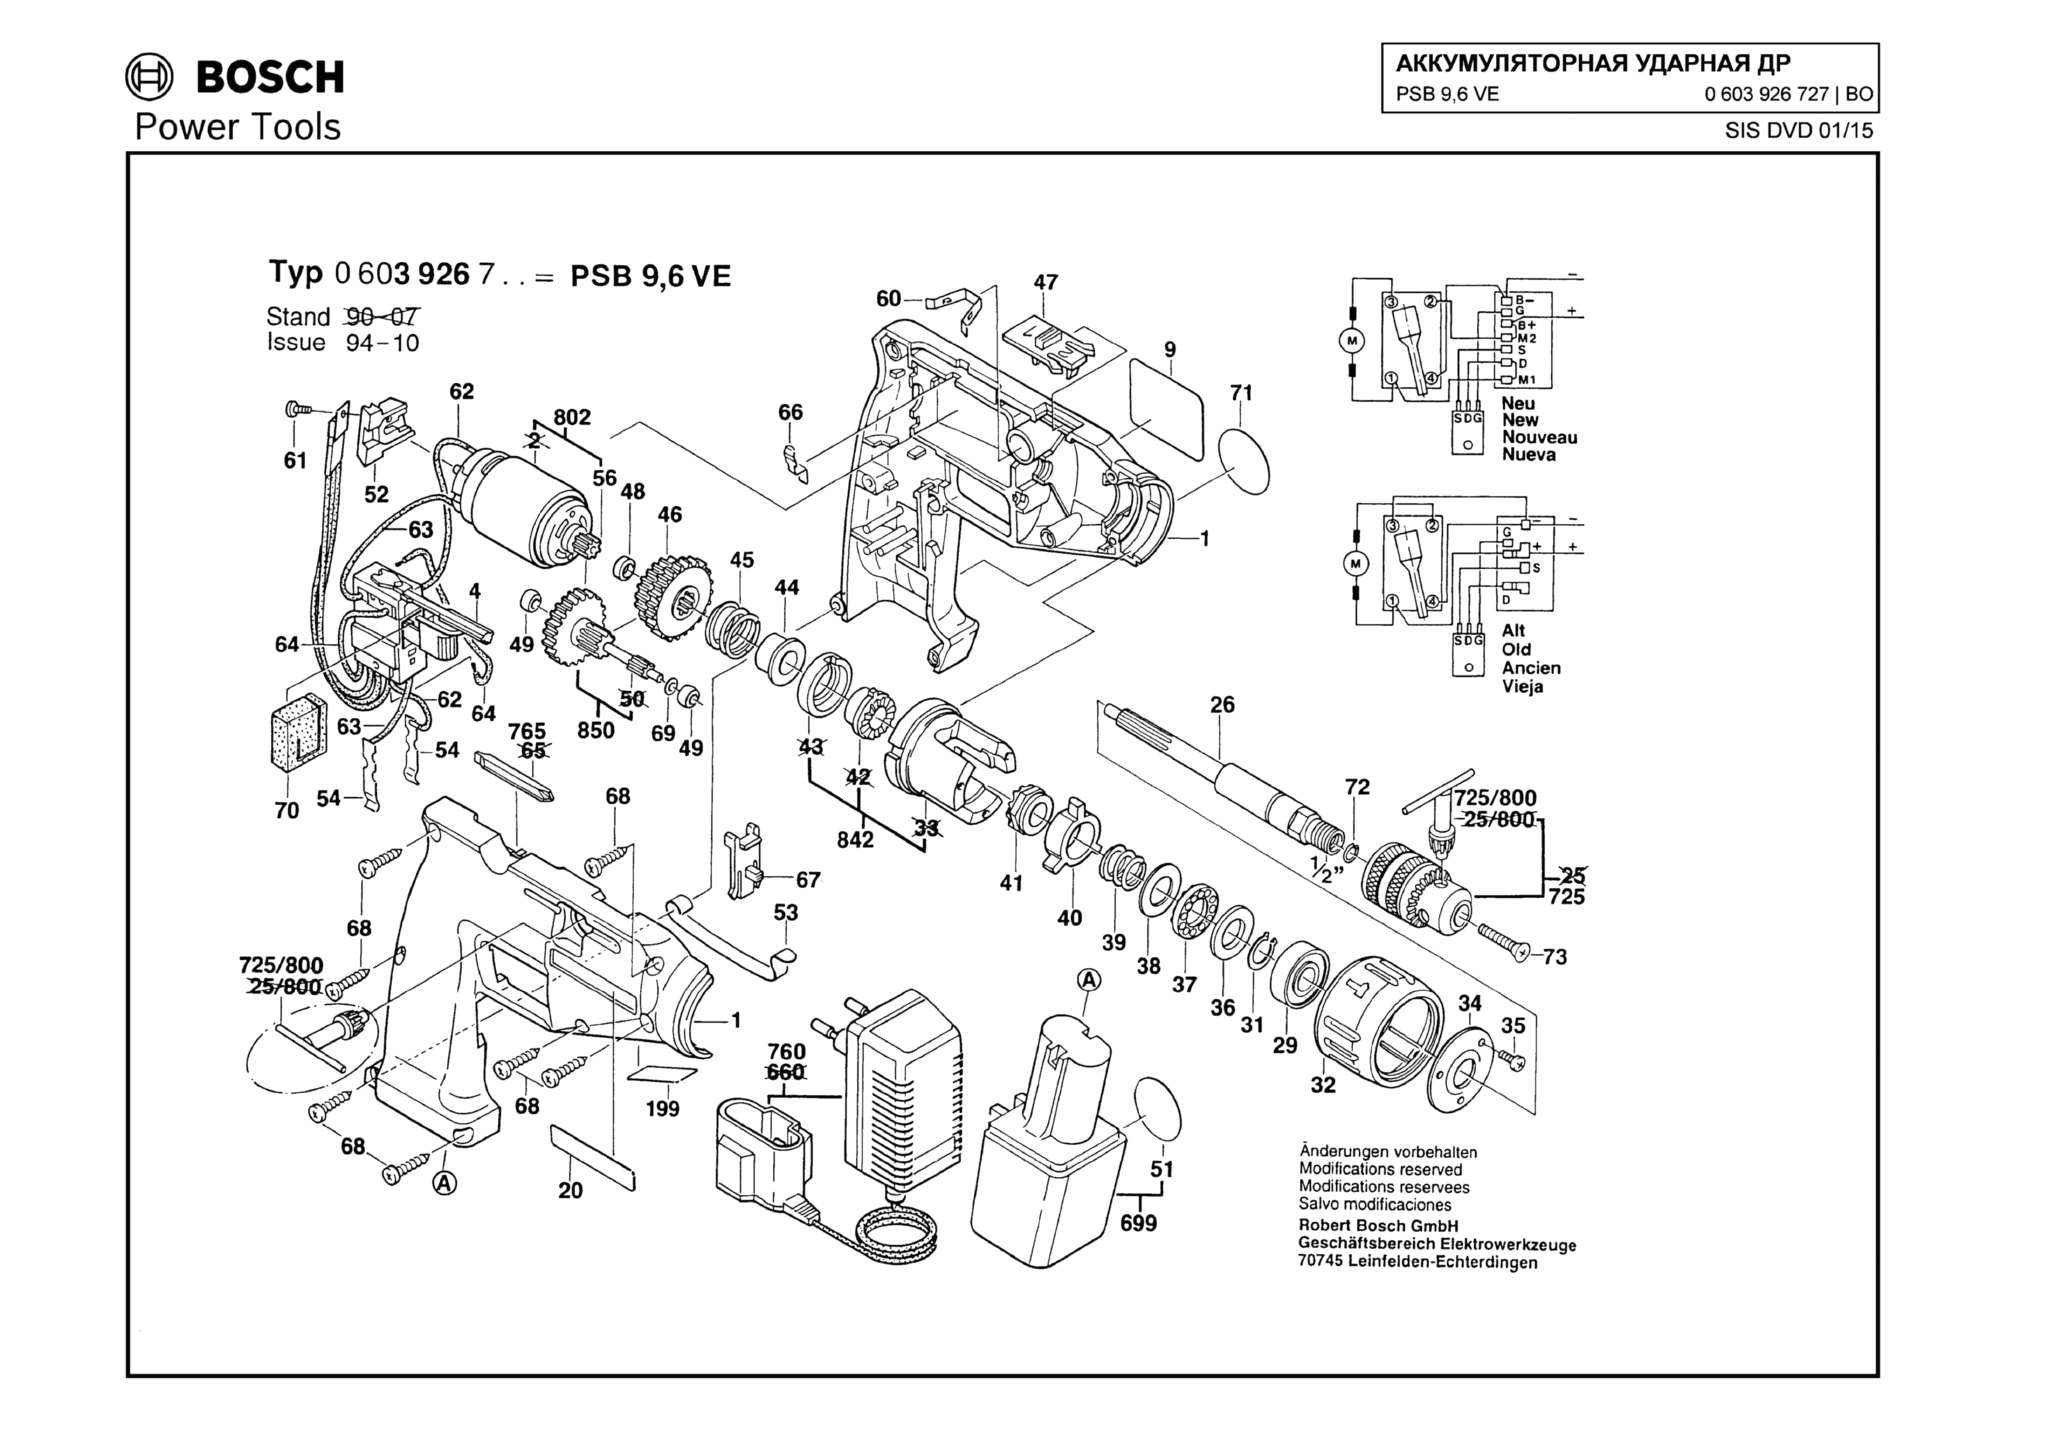 Запчасти, схема и деталировка Bosch PSB 9,6 VE (ТИП 0603926727)